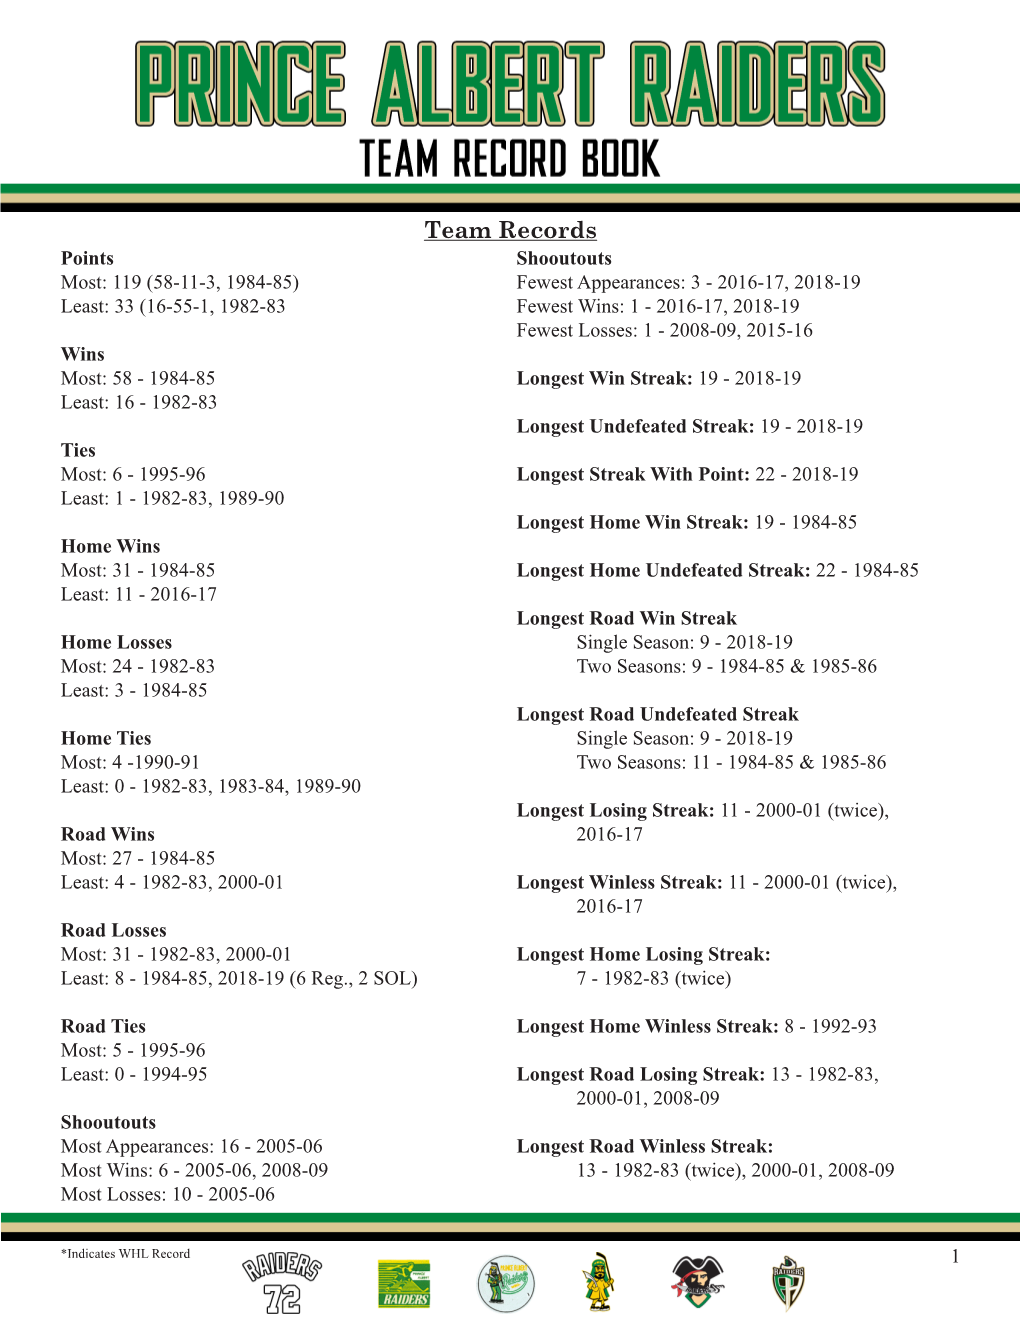 Team Record Book